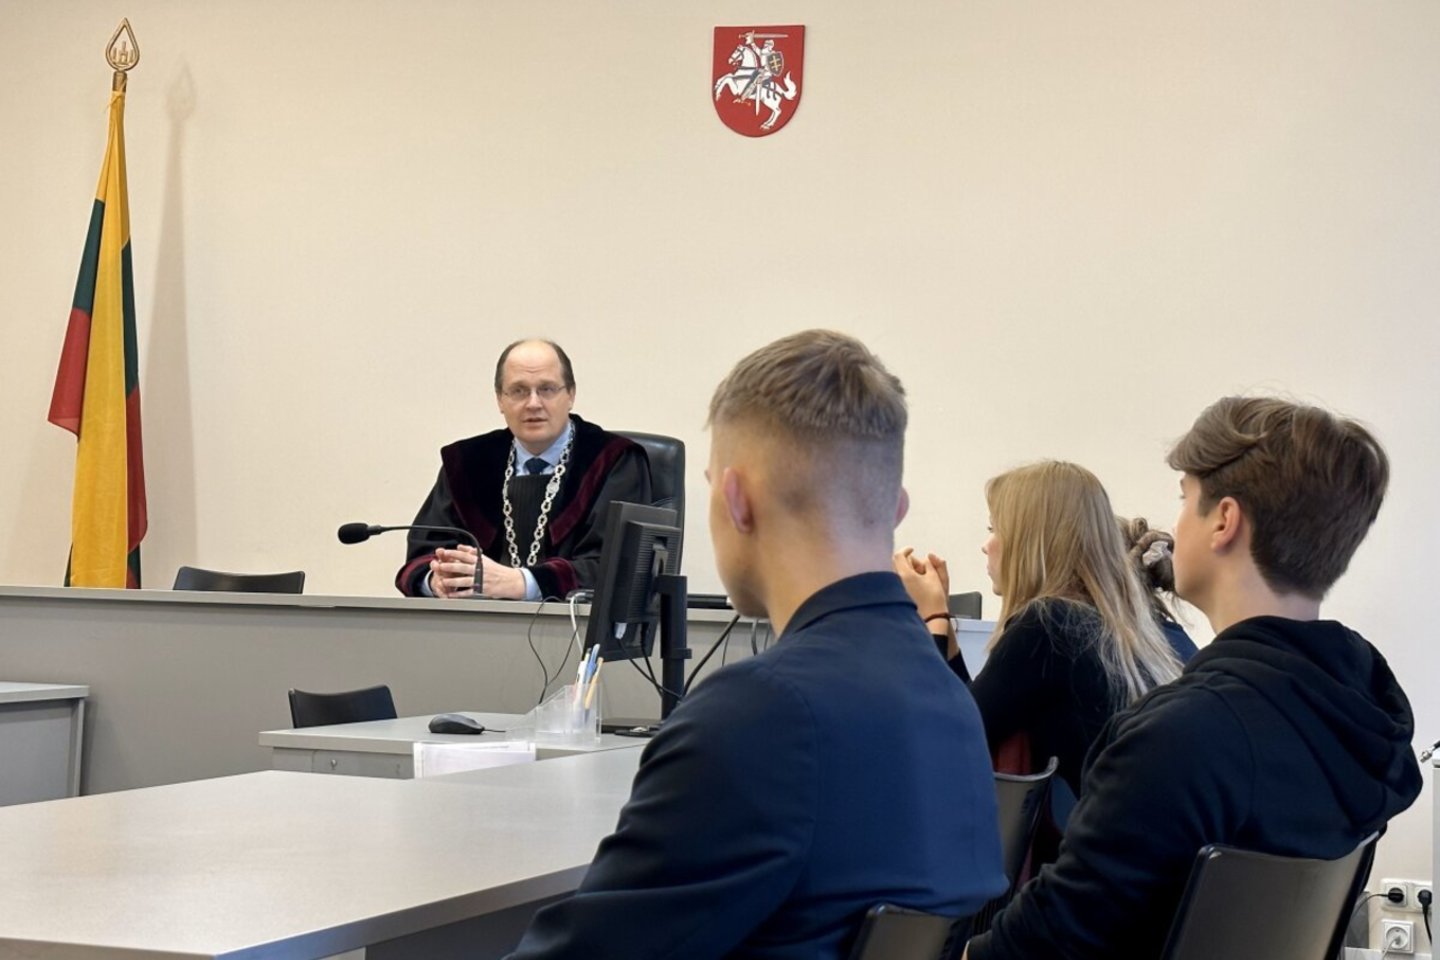  Kauno apylinkės teismo pirmininkas A. Purvainis pirmadienį moksleiviams skaitė pilietiškumo paskaitą, mokiniai buvo supažindinti su teisėjo darbu.  <br> T. Merkevičiūtės nuotr. 